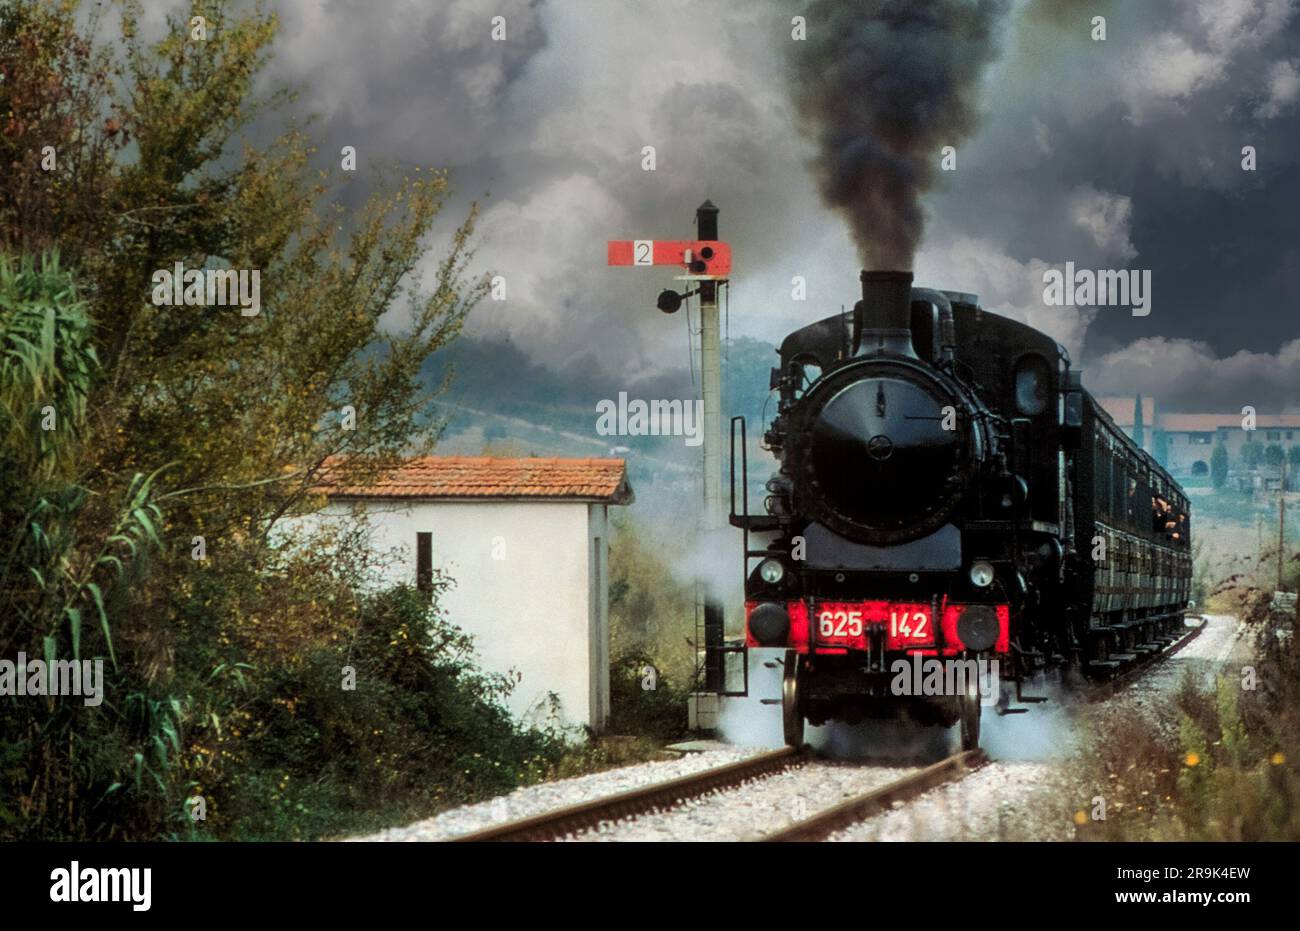 Italia Ferrocarril Toscana de Val D'Orcia Foto de stock